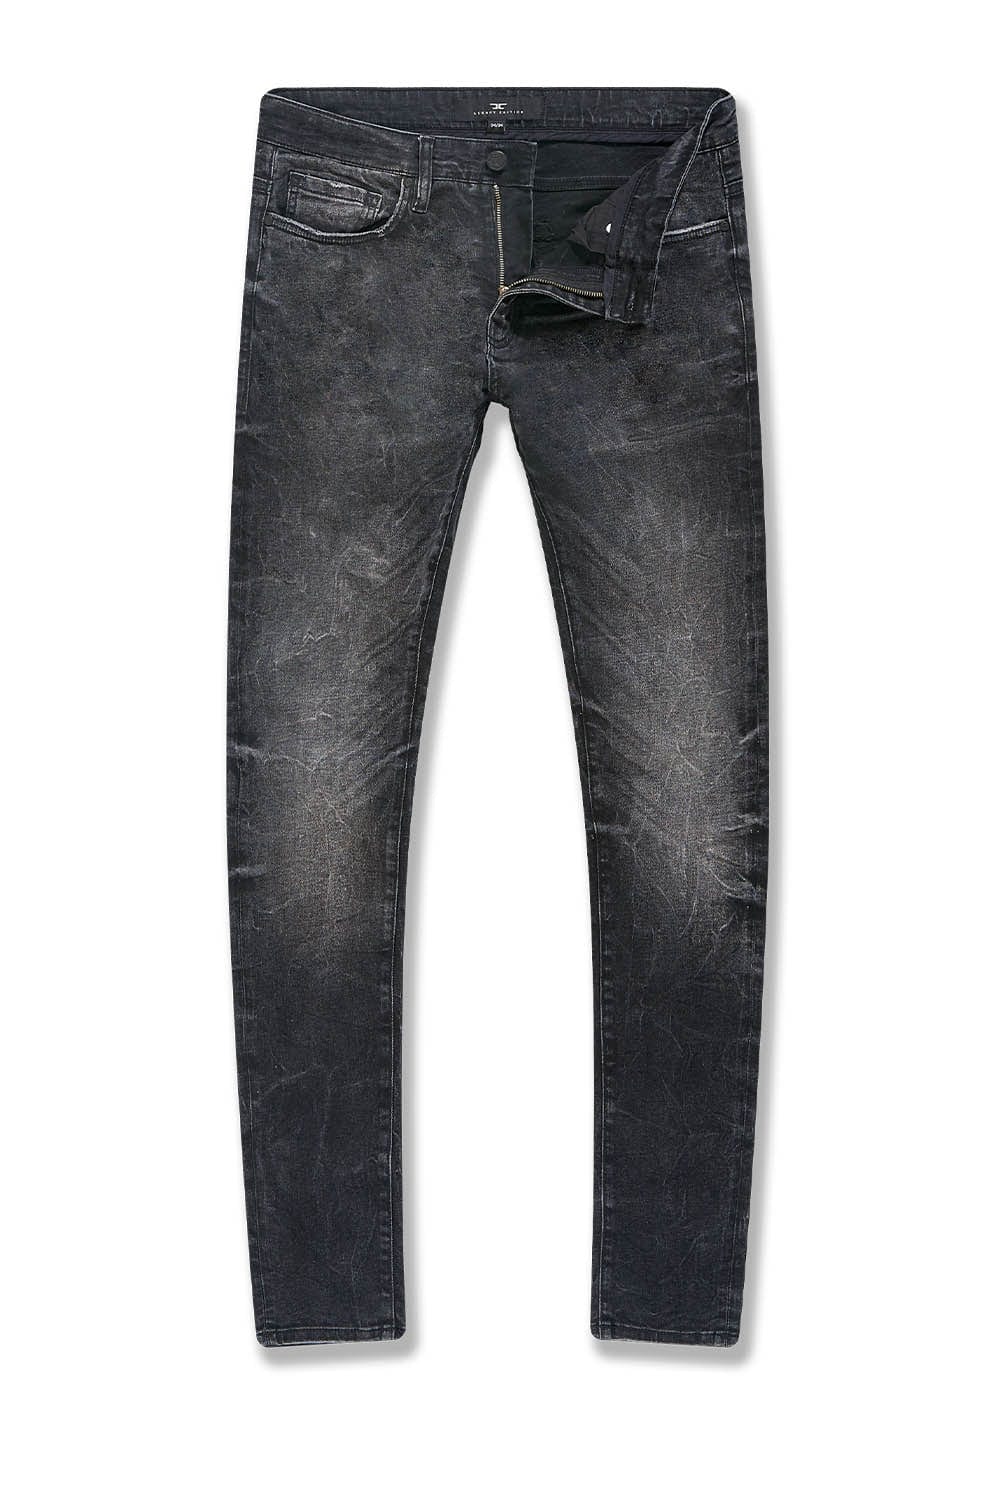 Jordan Craig Black Shadow Skinny Fit Jeans